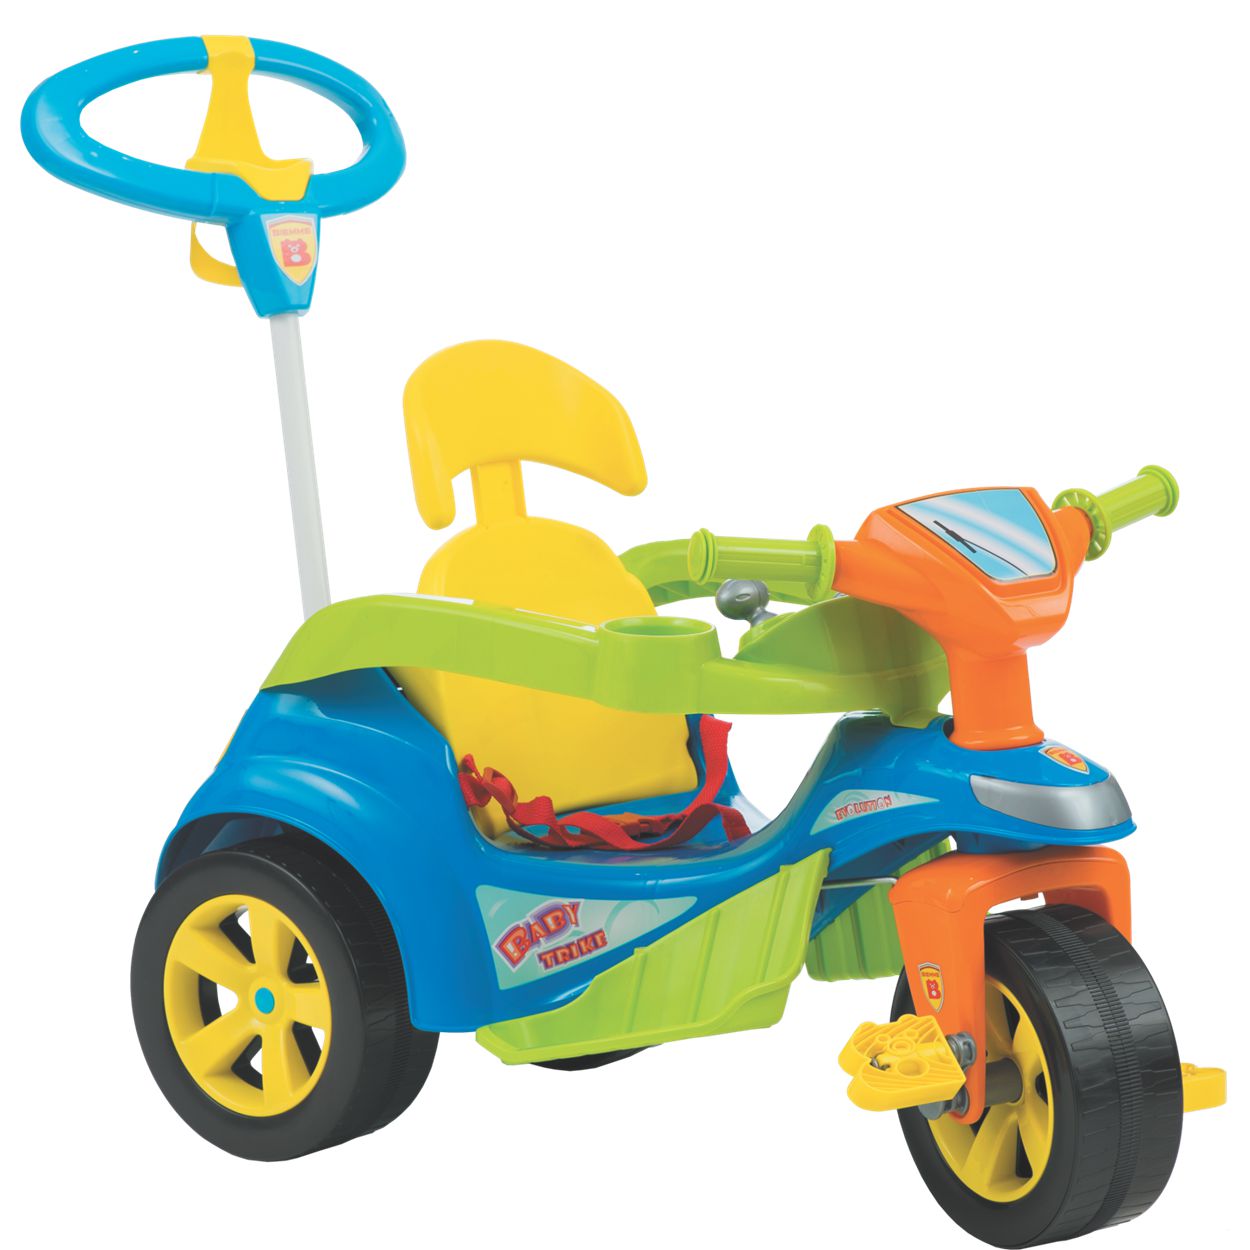 Carrinho de Passeio Pedal Biemme Triciclo Baby Trike Azul - Maçã Verde Baby